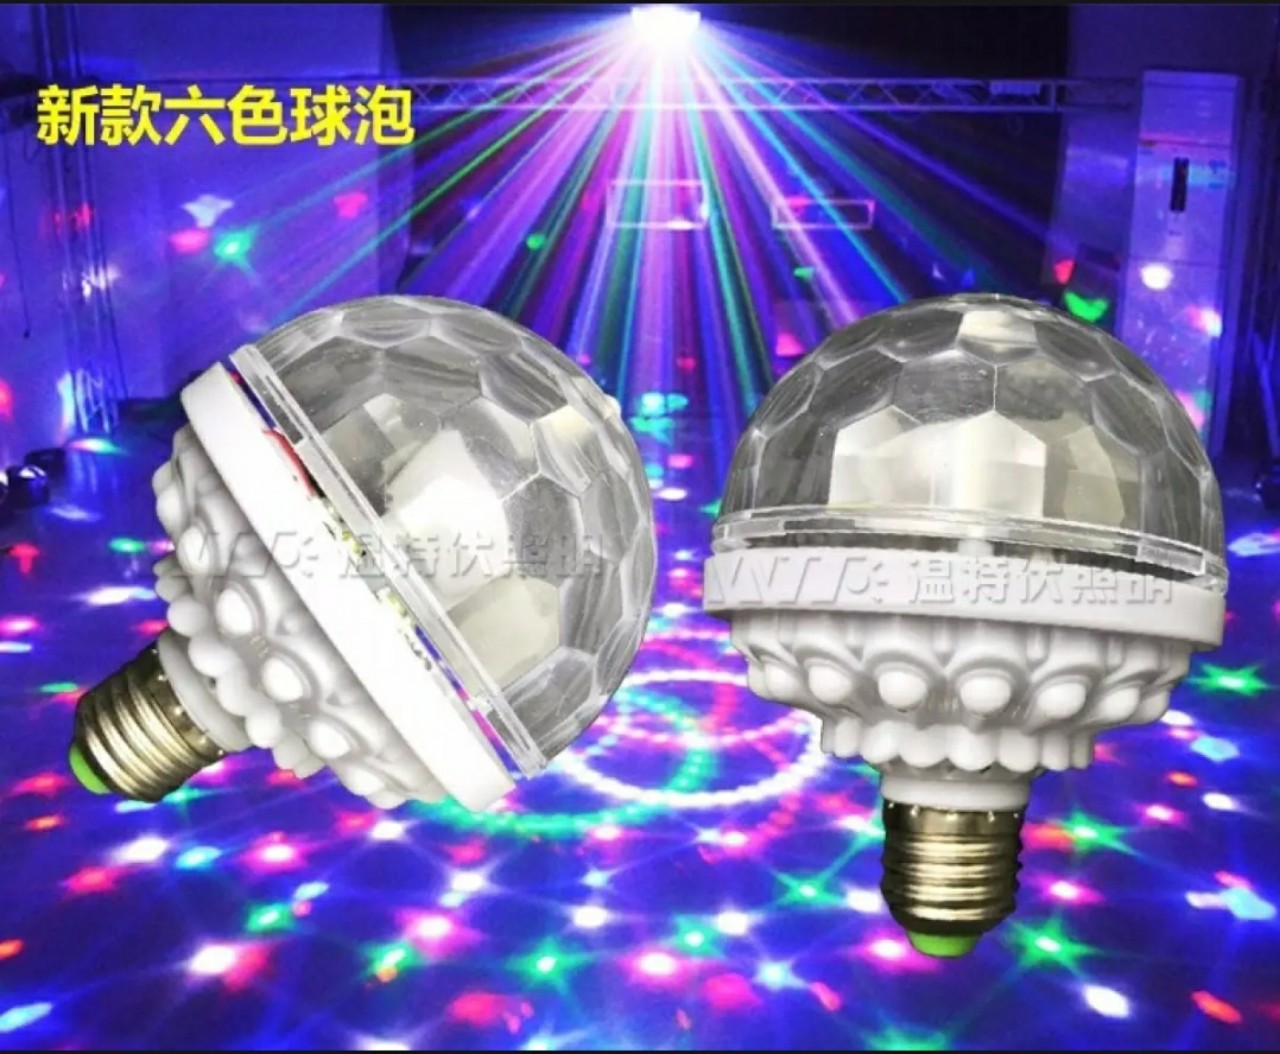 Đèn LED 7 màu vũ trường cảm ứng nhạc, đèn LED xoay 7 màu sân khấu chớp theo nhạc, Đèn nháy theo nhạc, đèn chớp 7 màu, đèn trang trí, đèn Led karaoke, đèn Led vũ trường, đèn cảm ứng âm thanh